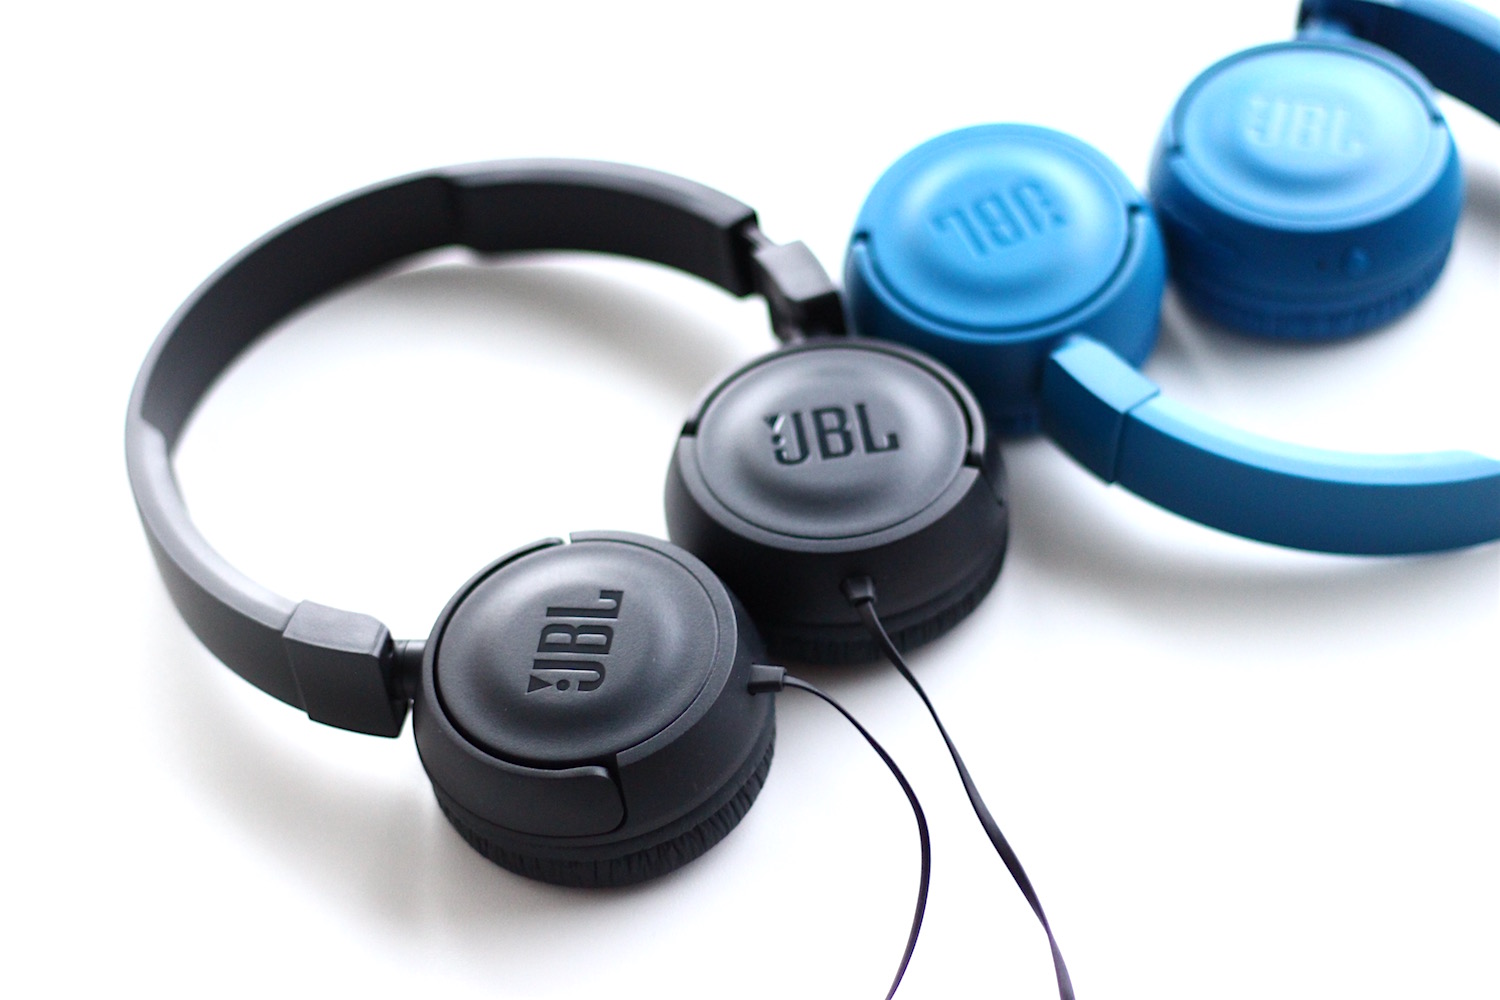 Tai nghe JBL T450 (Blue) đem tới trải nghiệm âm thanh tuyệt vời mà không có được ở dòng tai nghe nào